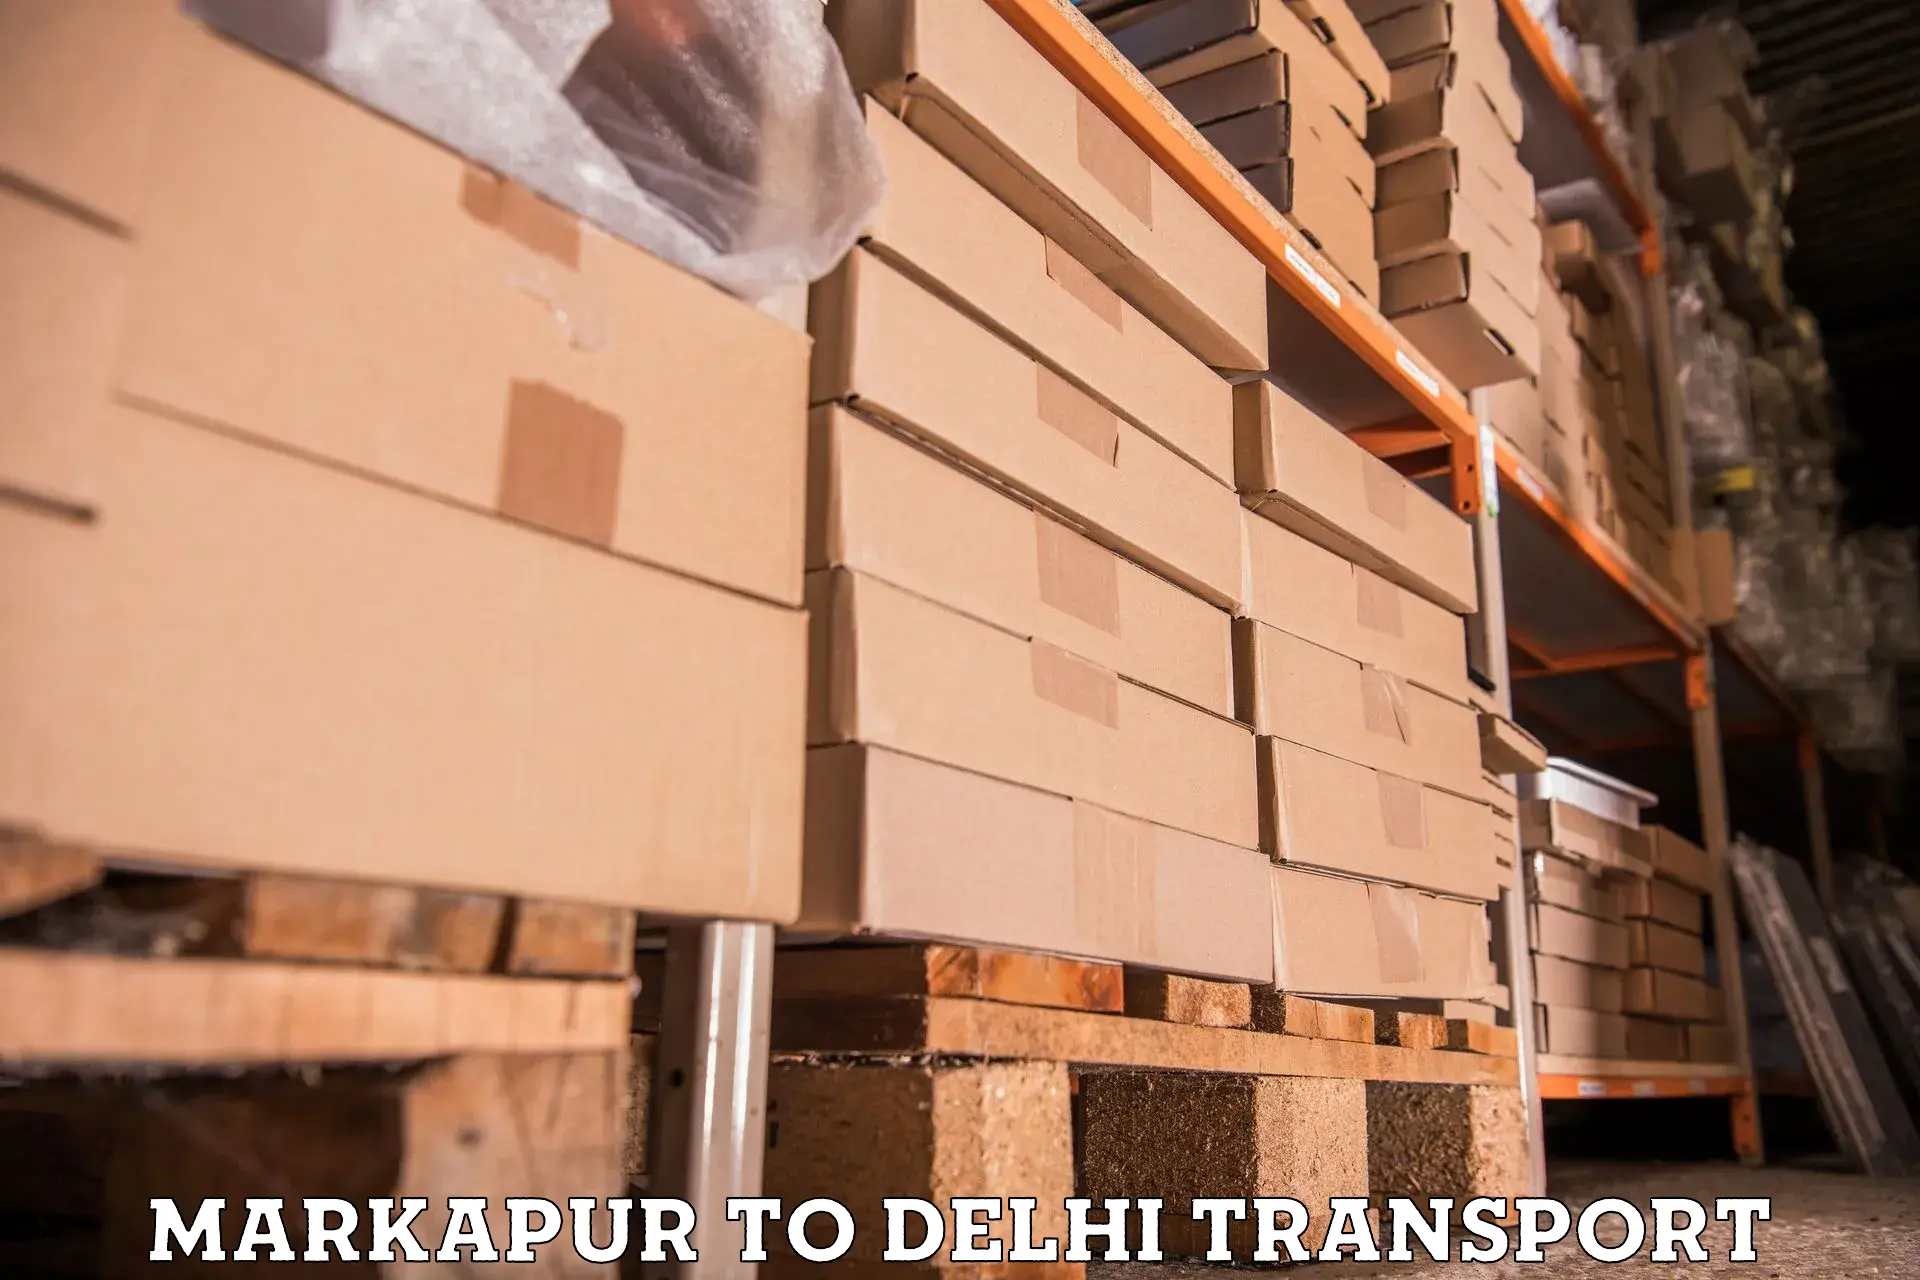 Furniture transport service Markapur to East Delhi